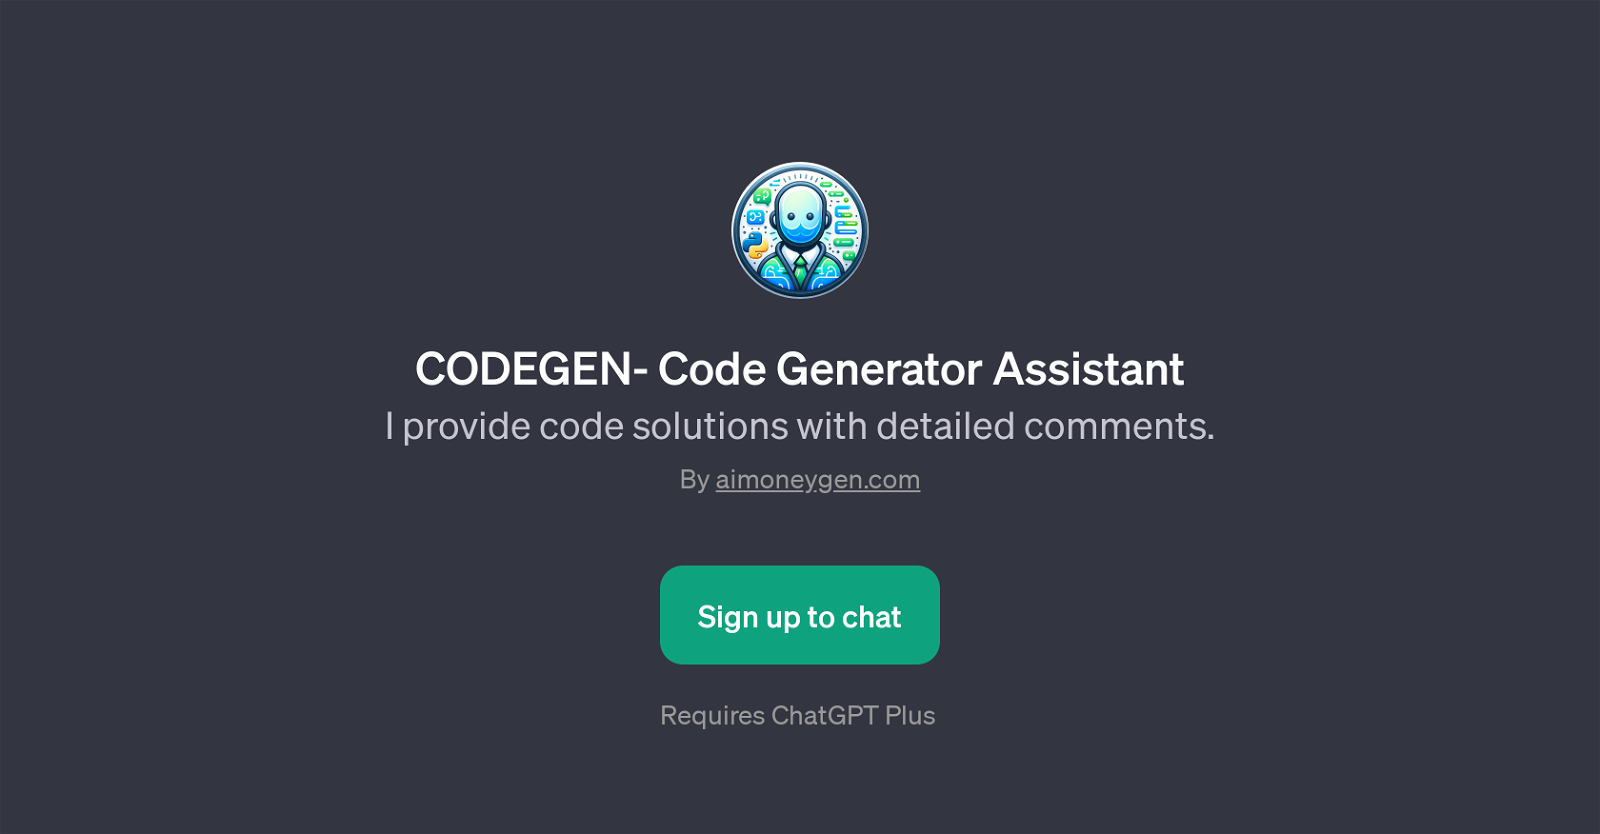 CODEGEN- Code Generator Assistant website